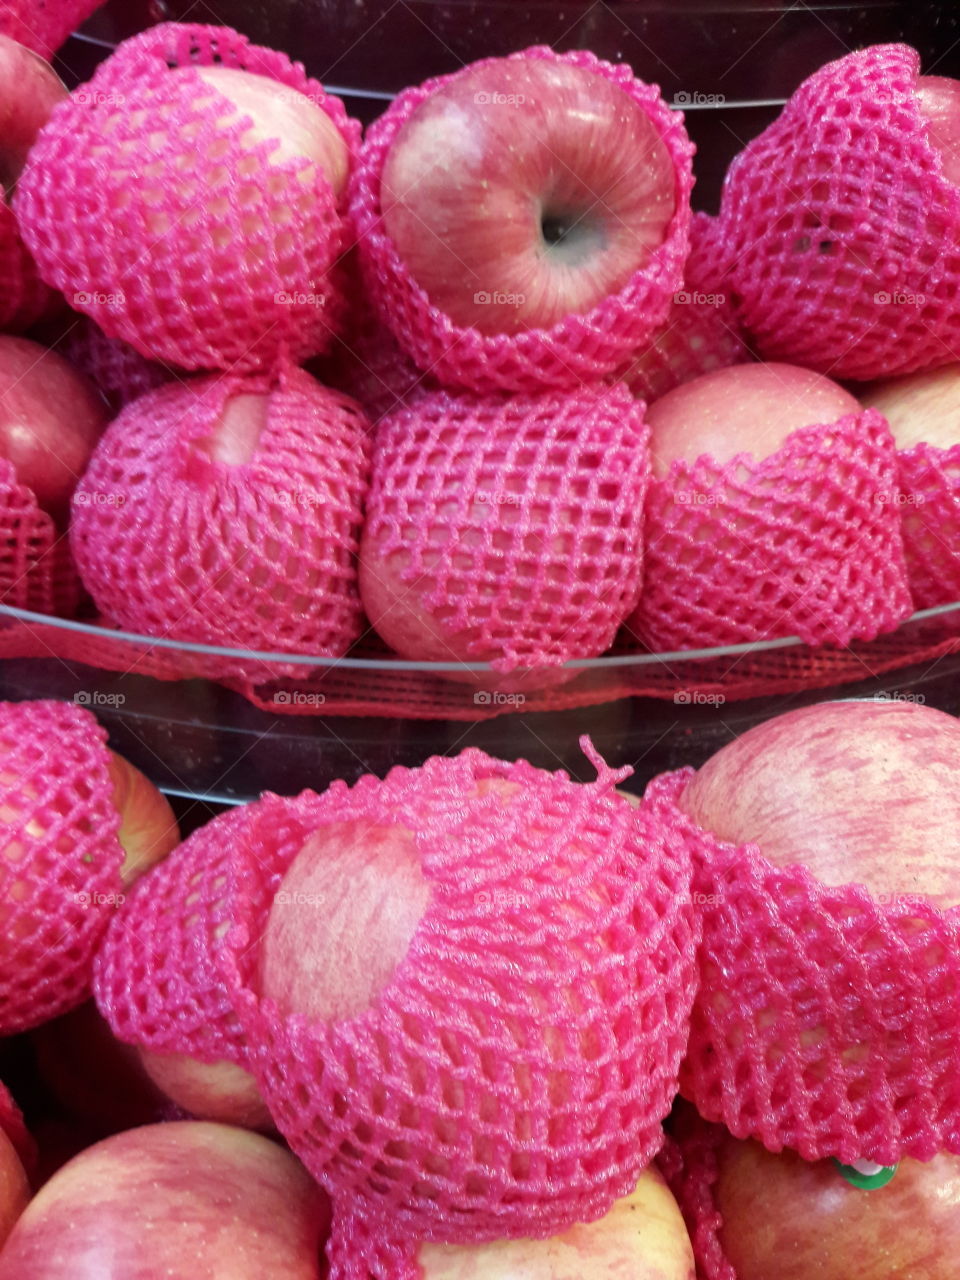 Closeup  of PINK Apples